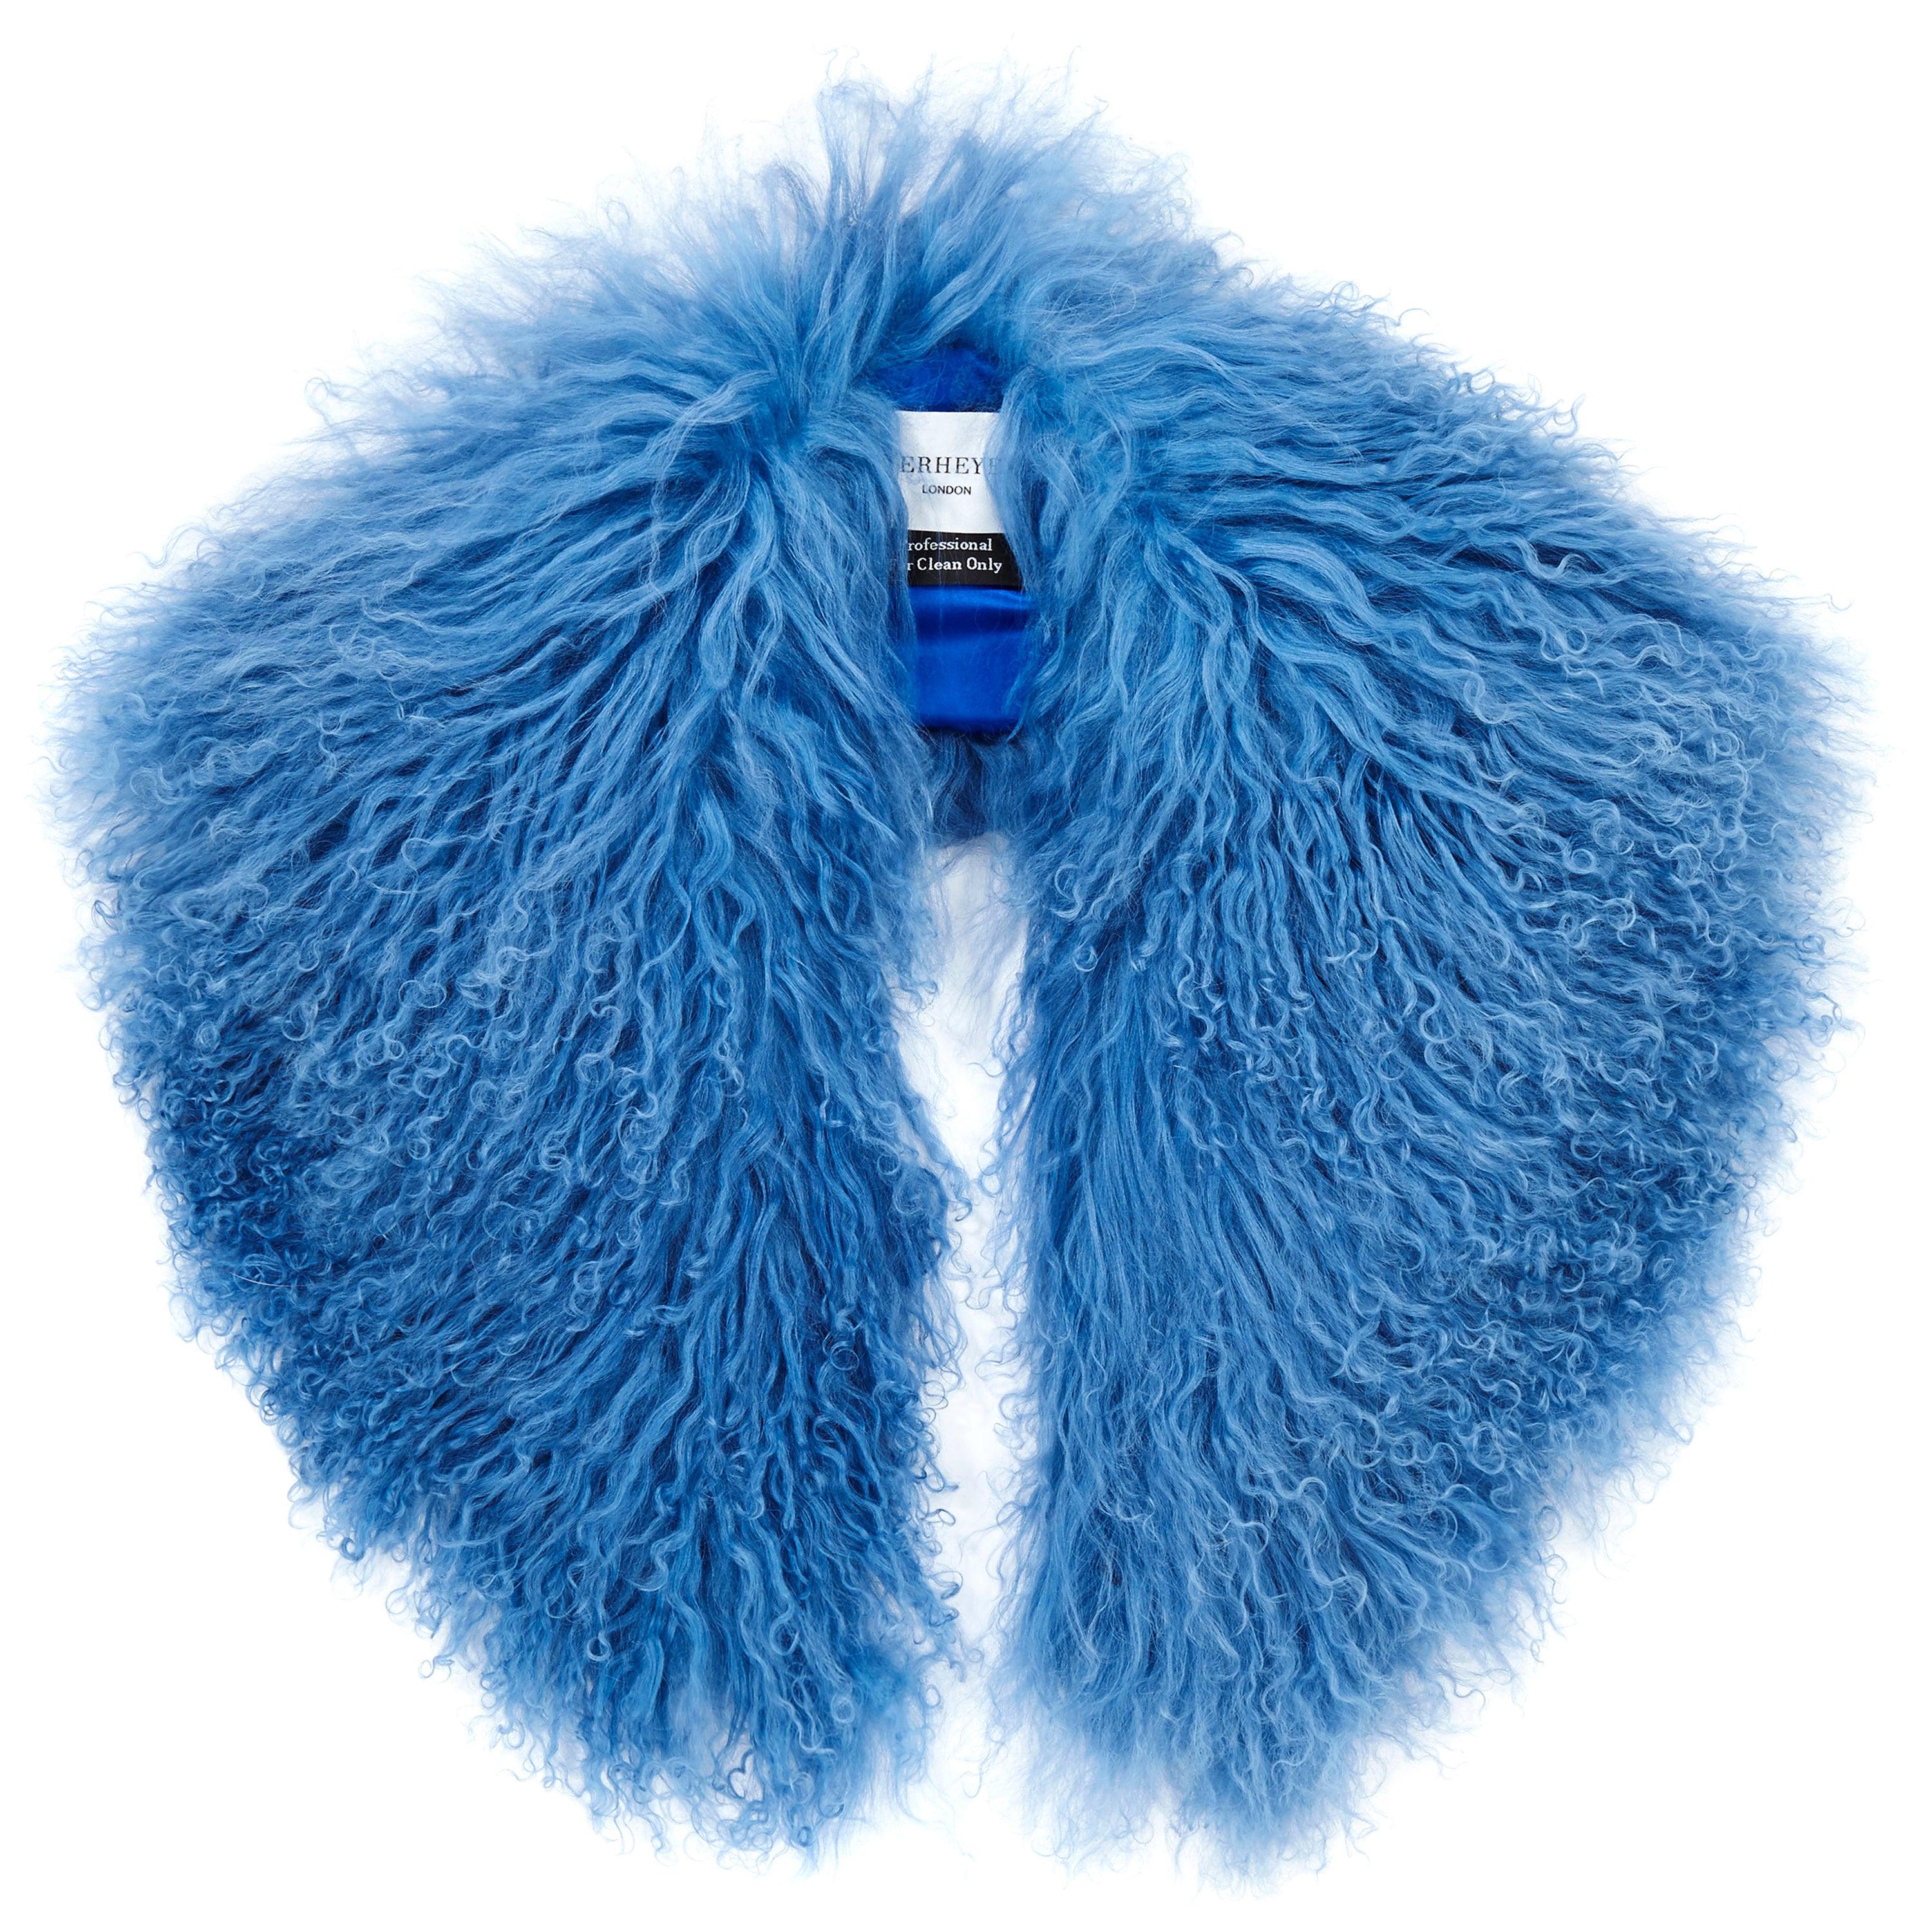 Verheyen London Shawl Collar in Blue Topaz Mongolian Lamb Fur lined in silk new